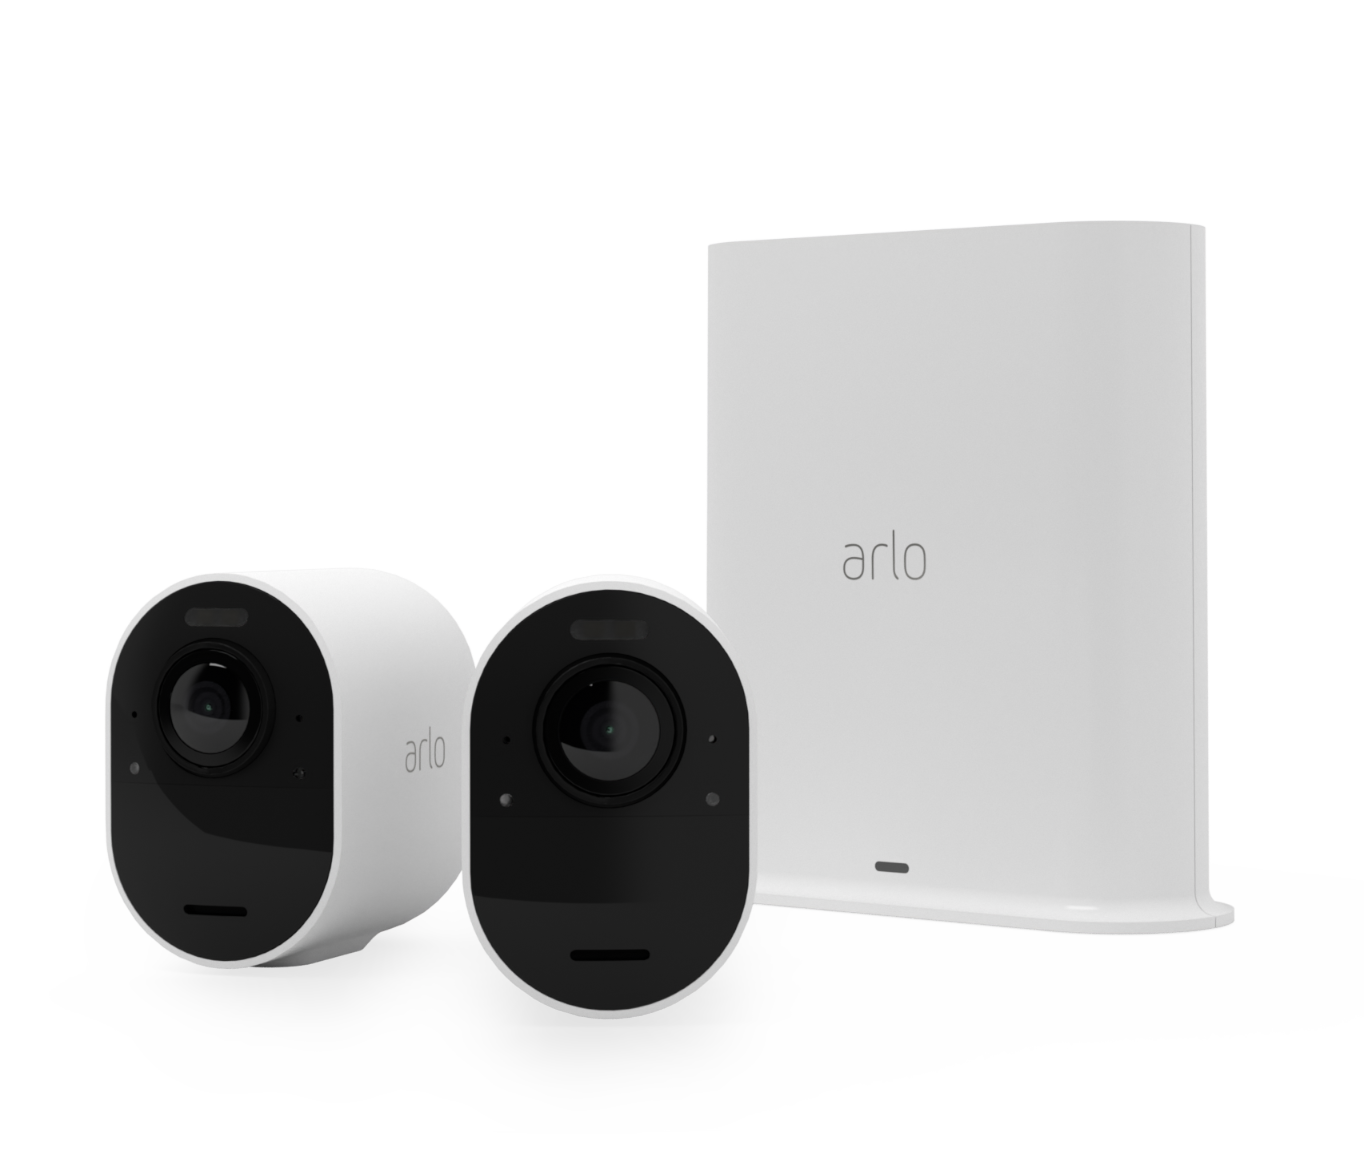 sirena Blanco visión nocturna con una prueba gratuita de 90 días de Arlo Secure 4 cámaras de vigilancia exterior wifi video 4K HDR y SmartHub Arlo Ultra 2 faro detector de movimiento